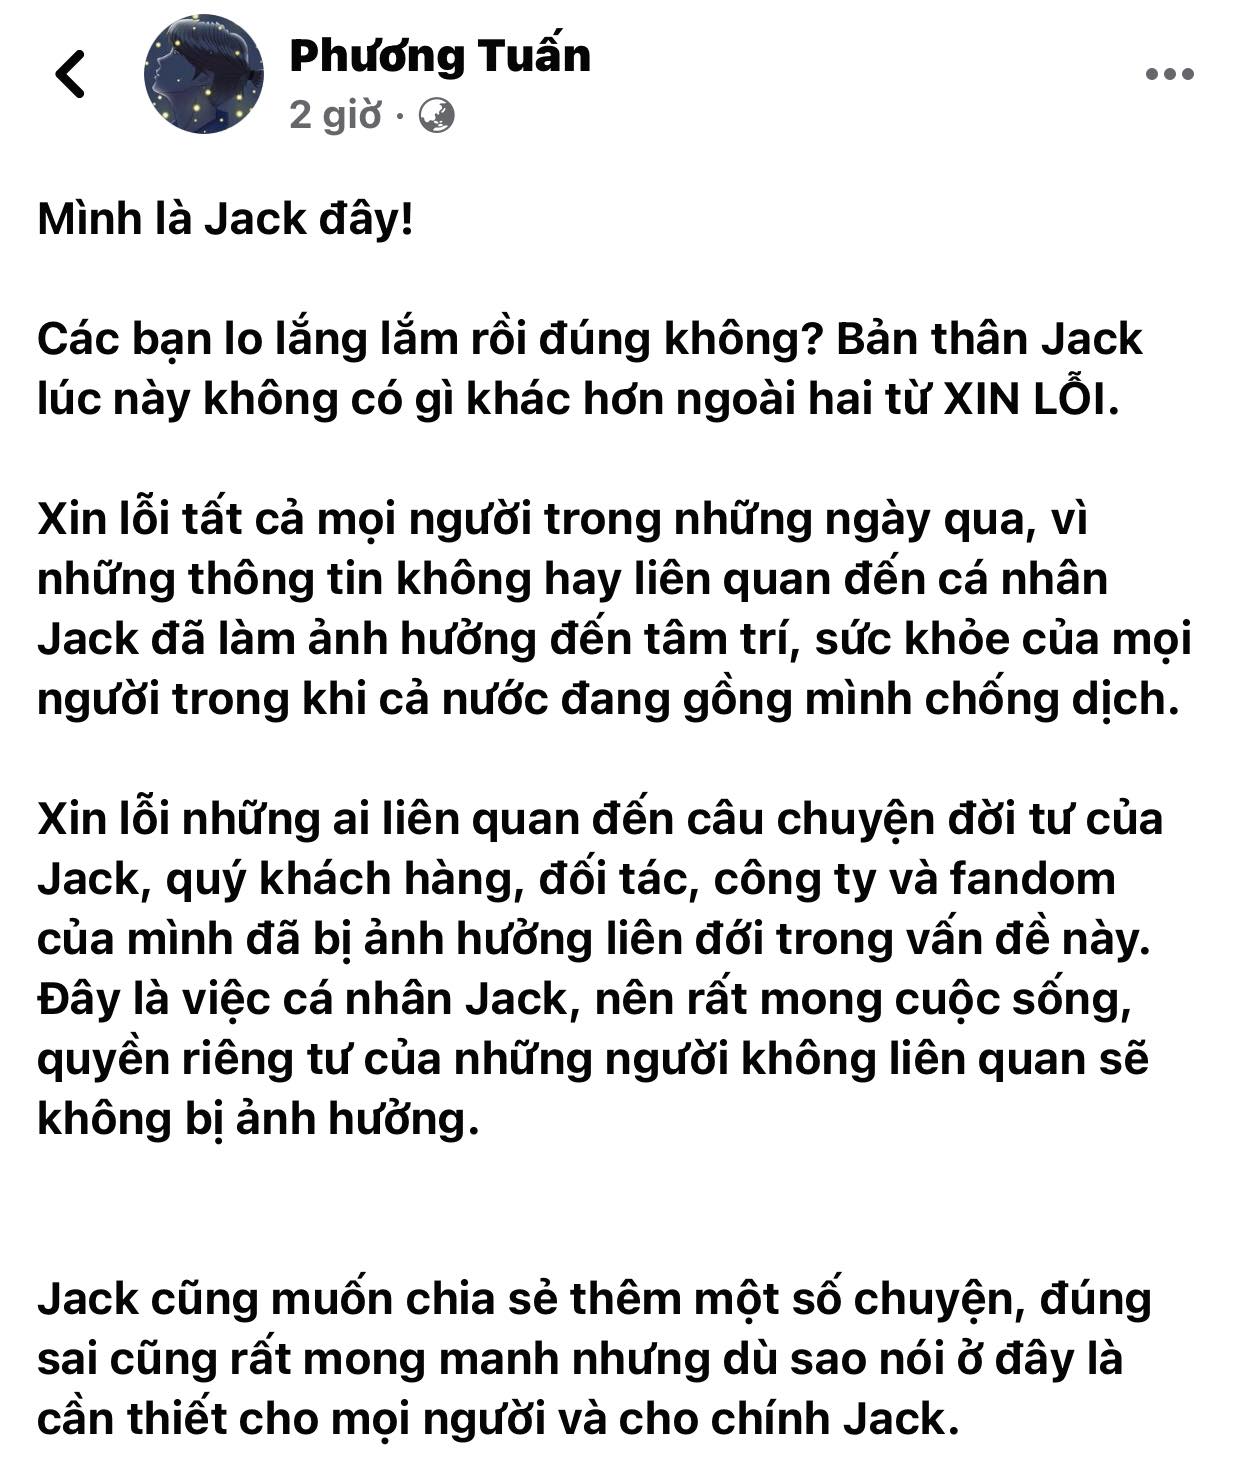 Jack-len-tieng-xin-loi-thua-nhan-co-con-voi-thien-an-que-van-lap-tuc-dang-dan-goi-thang-ten-dan-em